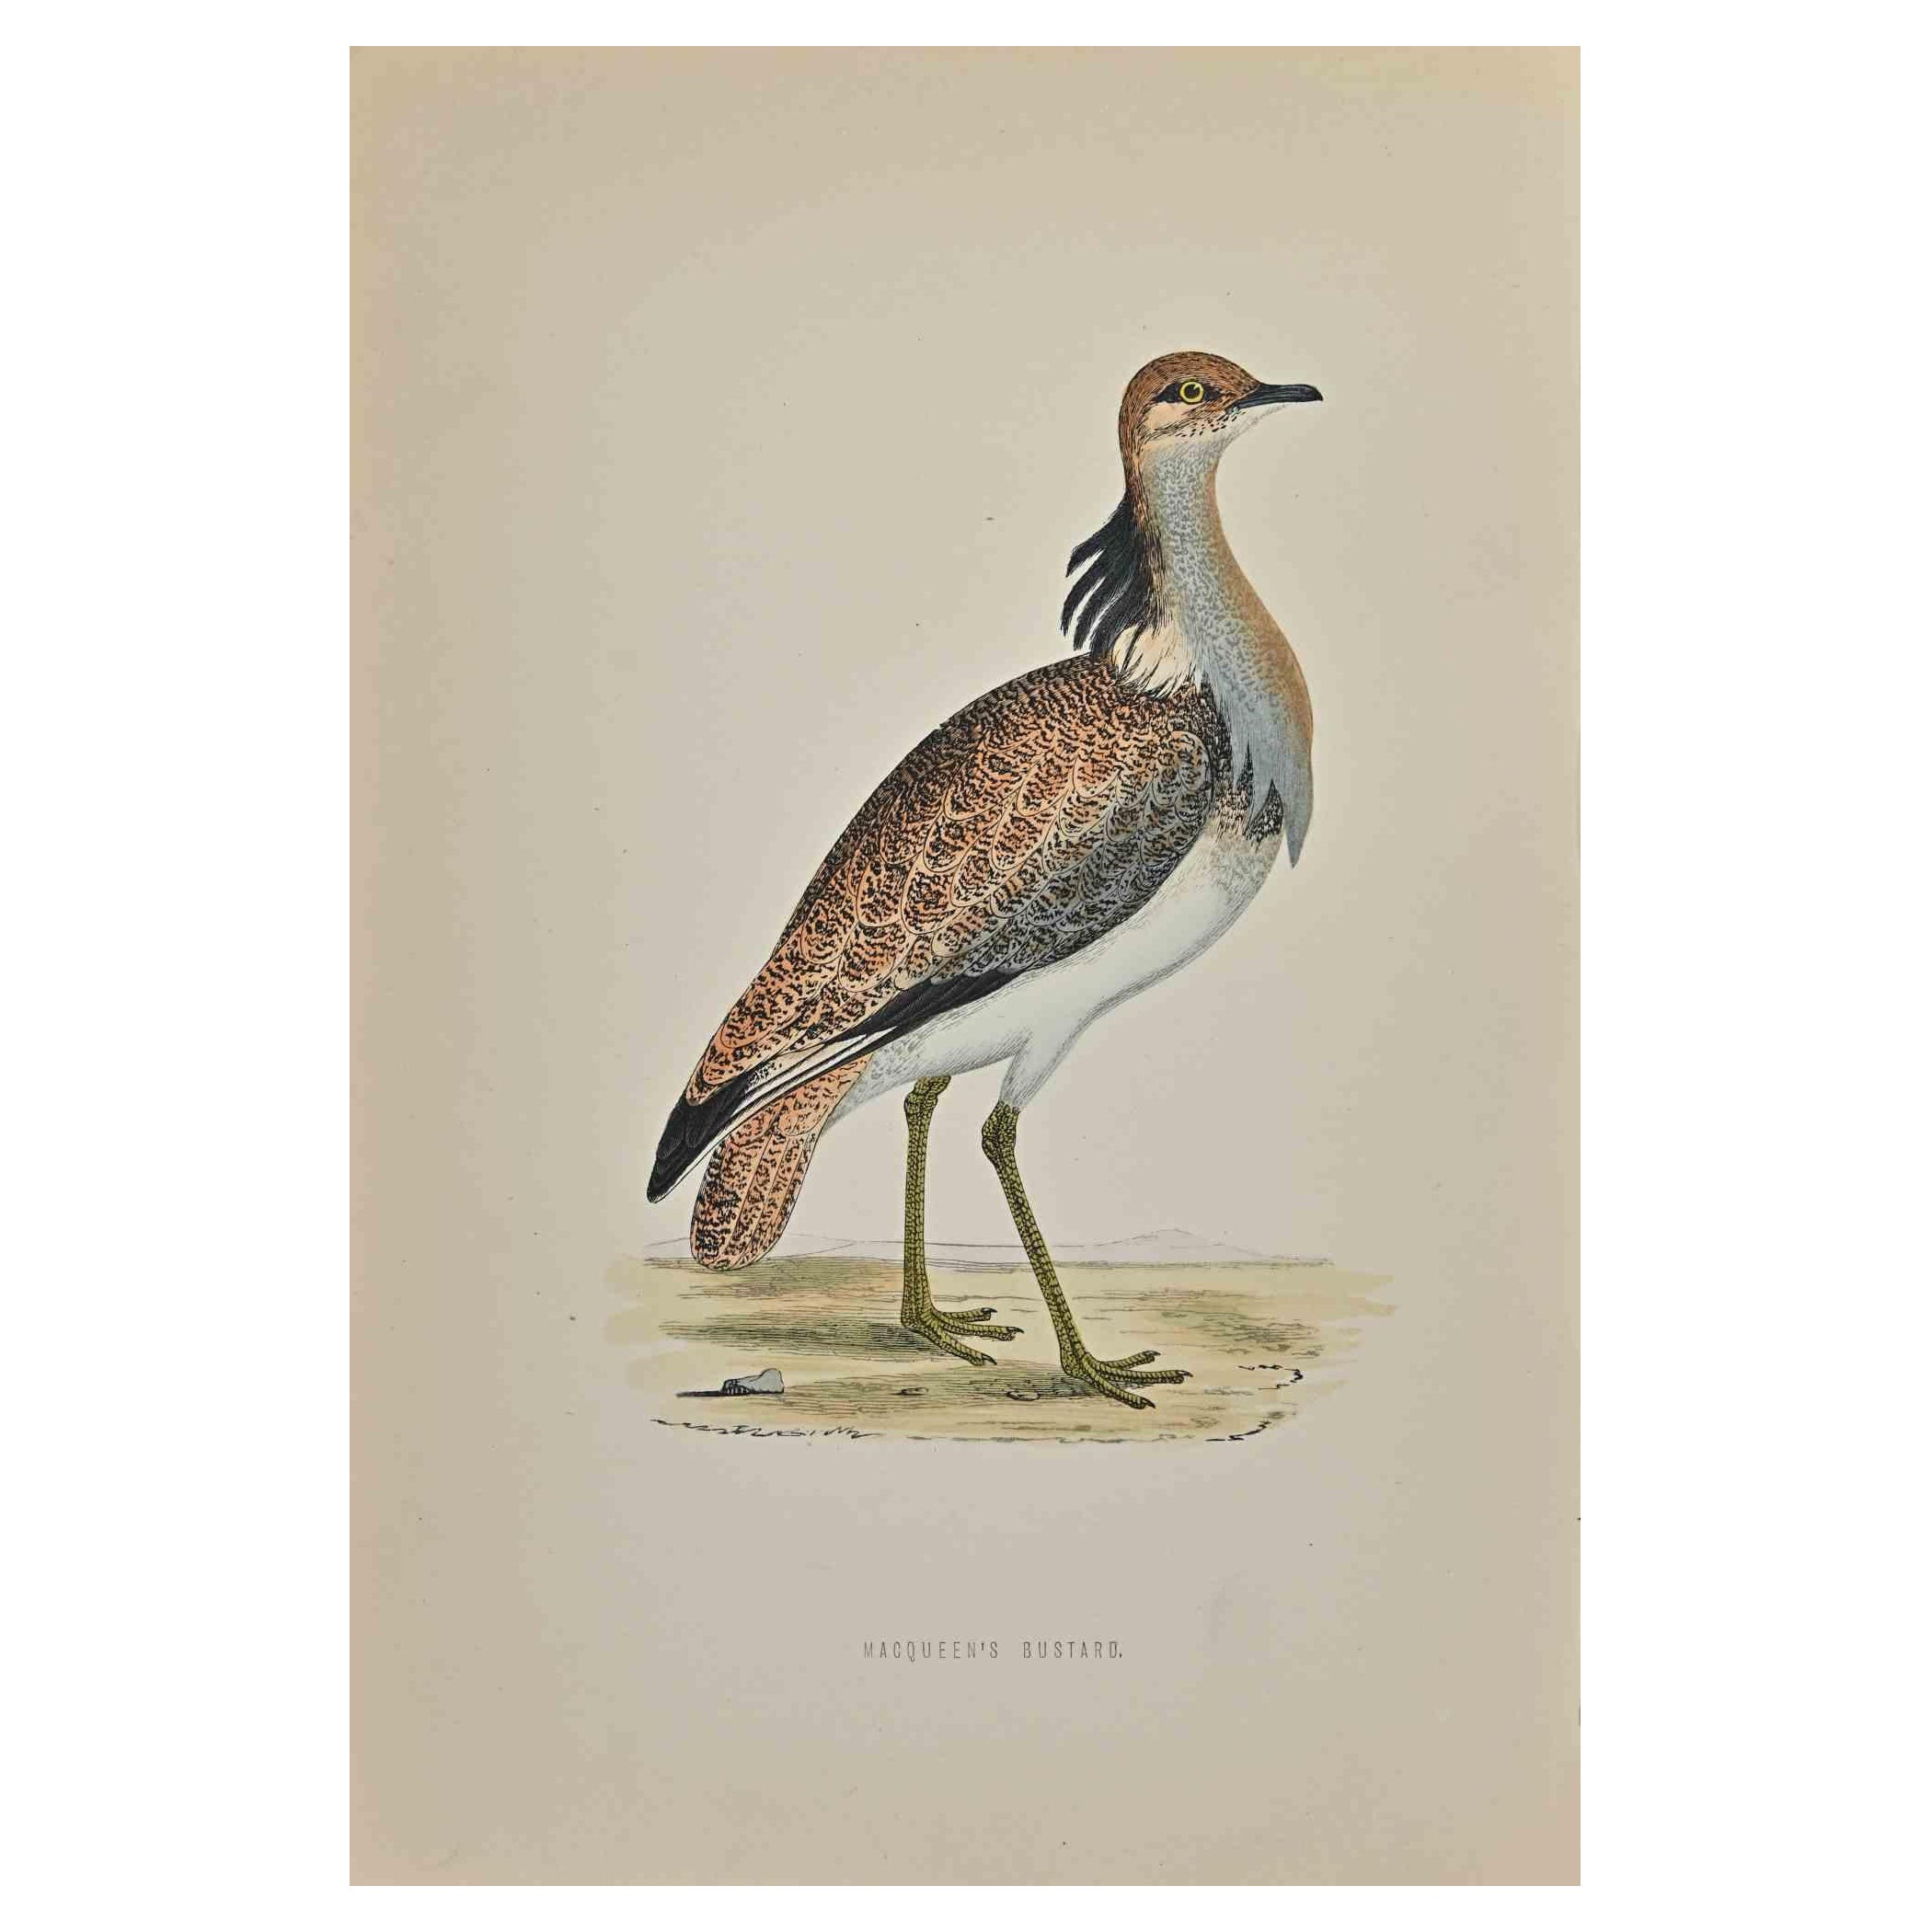 L'Outarde de Macqueen est une œuvre d'art moderne réalisée en 1870 par l'artiste britannique Alexander Francis Lydon (1836-1917) . 

Gravure sur bois, colorée à la main, publiée par London, Bell & Sons, 1870.  Nom de l'oiseau imprimé dans la plaque.